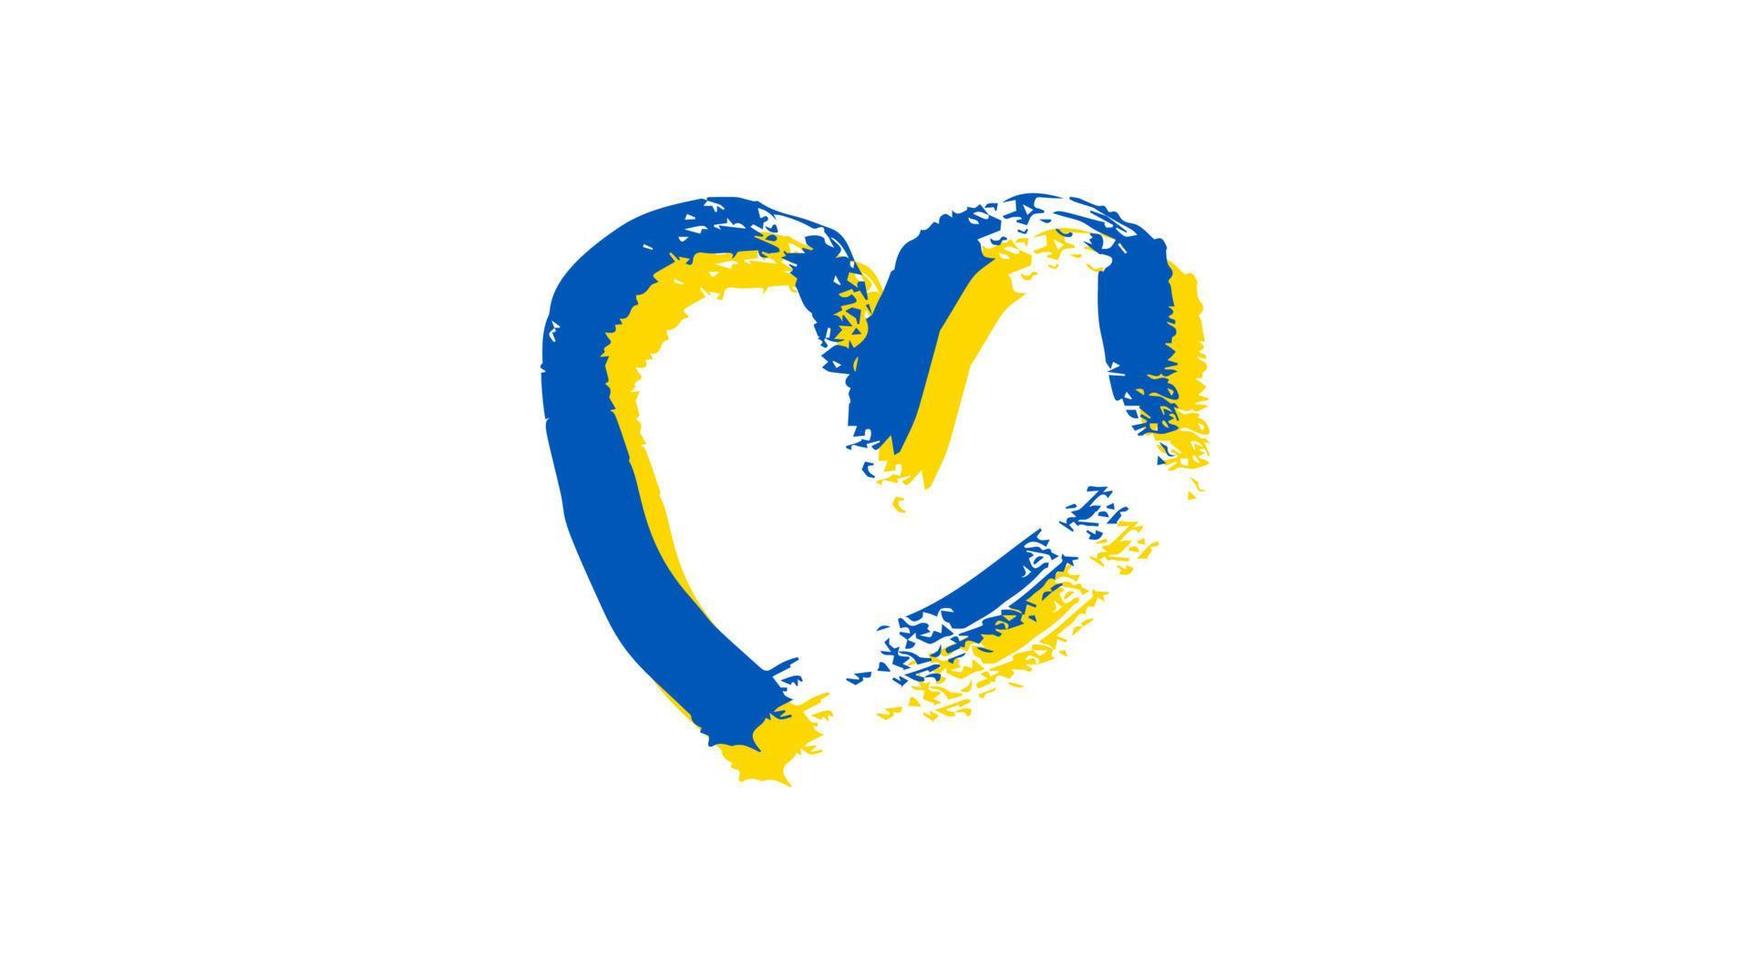 hand- getrokken hart in oekraïens kleuren. grunge geel en blauw tekening hart Aan wit achtergrond. vector illustratie